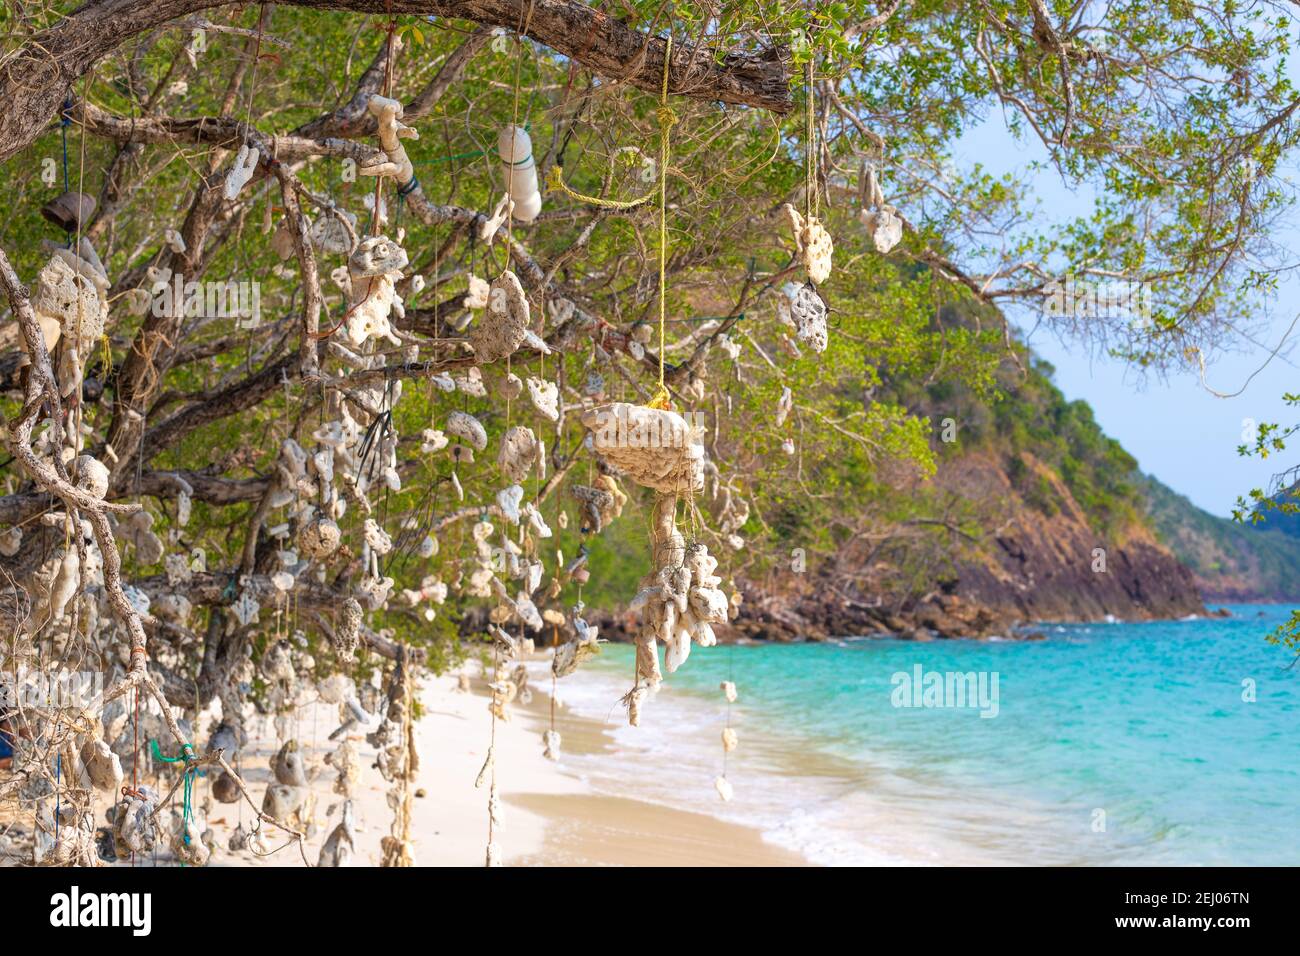 Wunschbaum. Korallen, die an einem Baum hängen, gebunden durch Fäden, an einer tropischen Küste in Thailand. Stockfoto